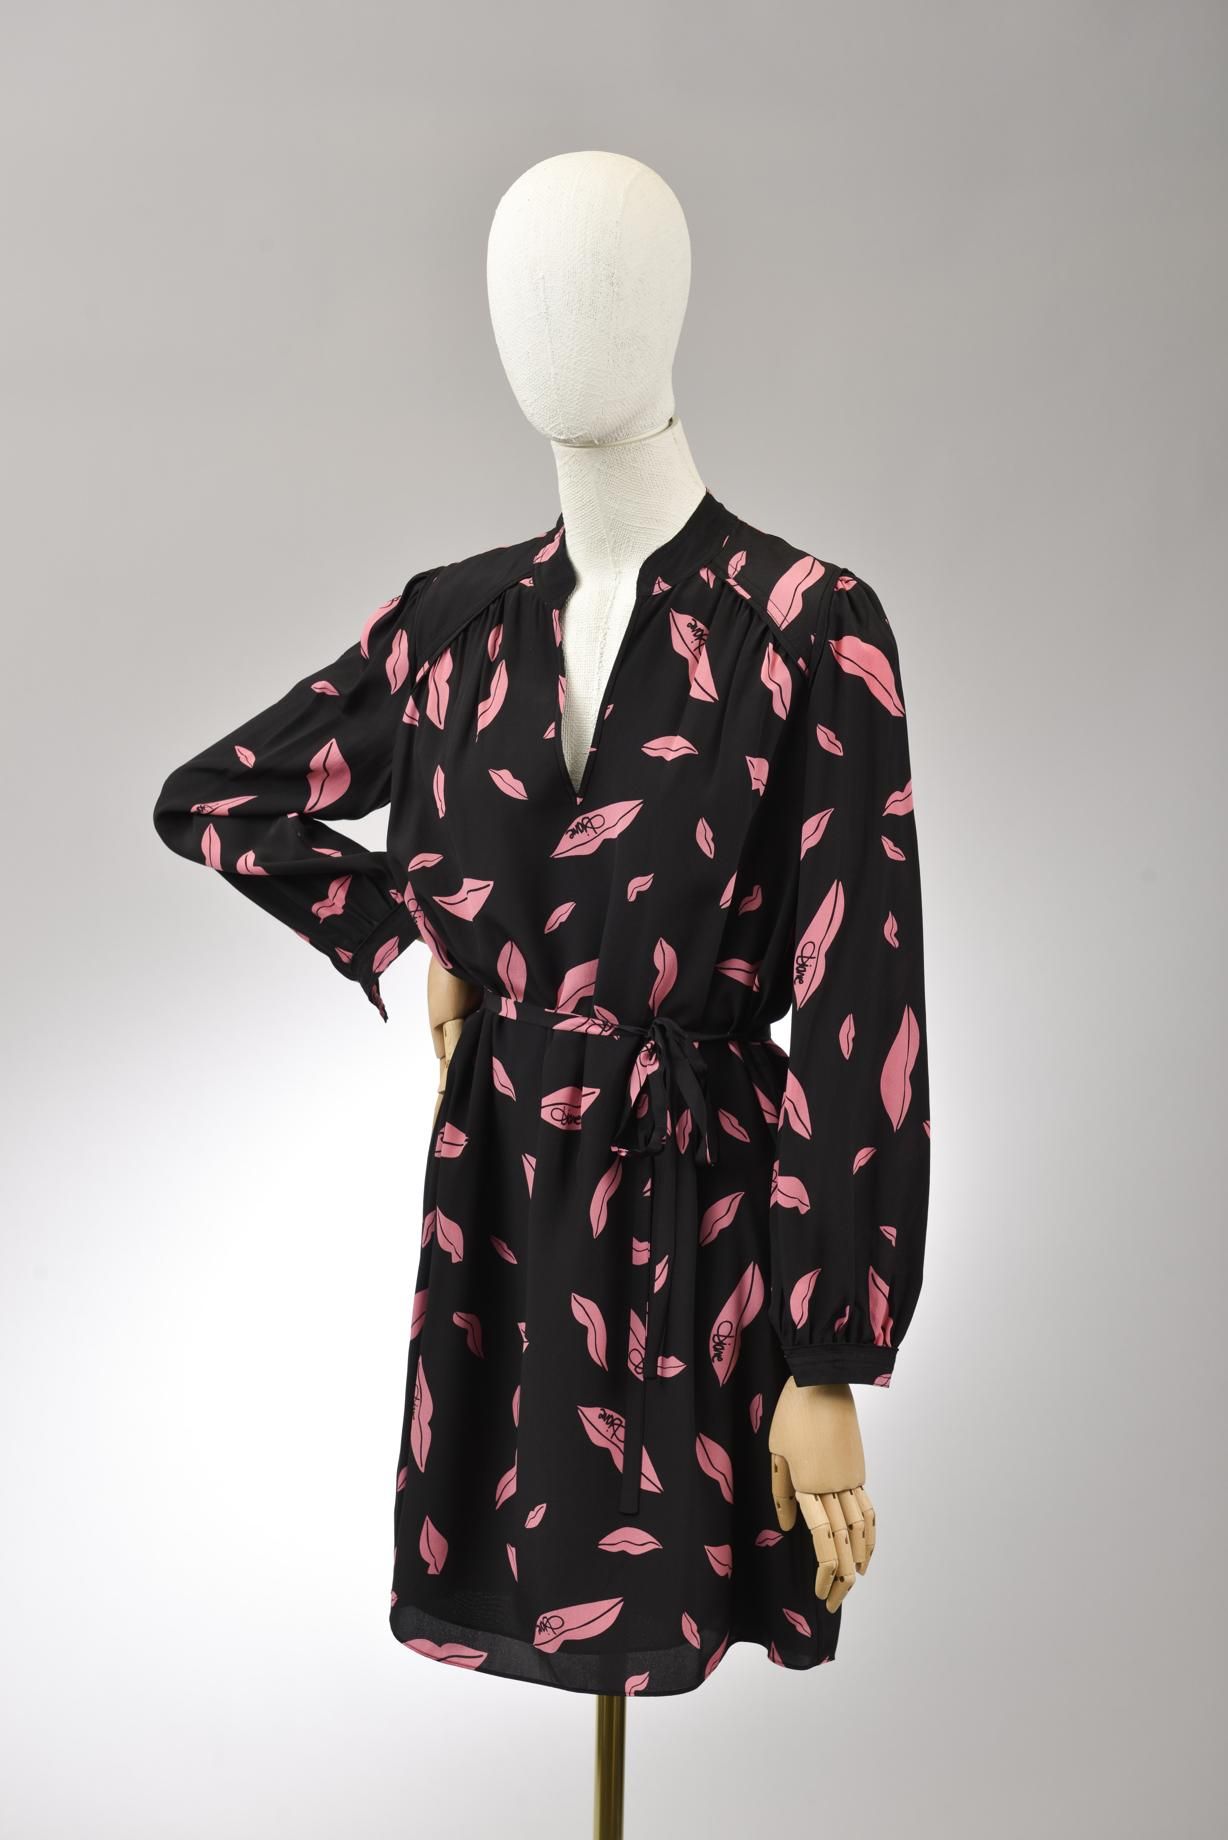 Null *尺寸L DVF - Diane Von Fürstenberg

套装包括。

-丝质连衣裙，型号为 "DVF Glenda"，印有 "Fallin&hellip;